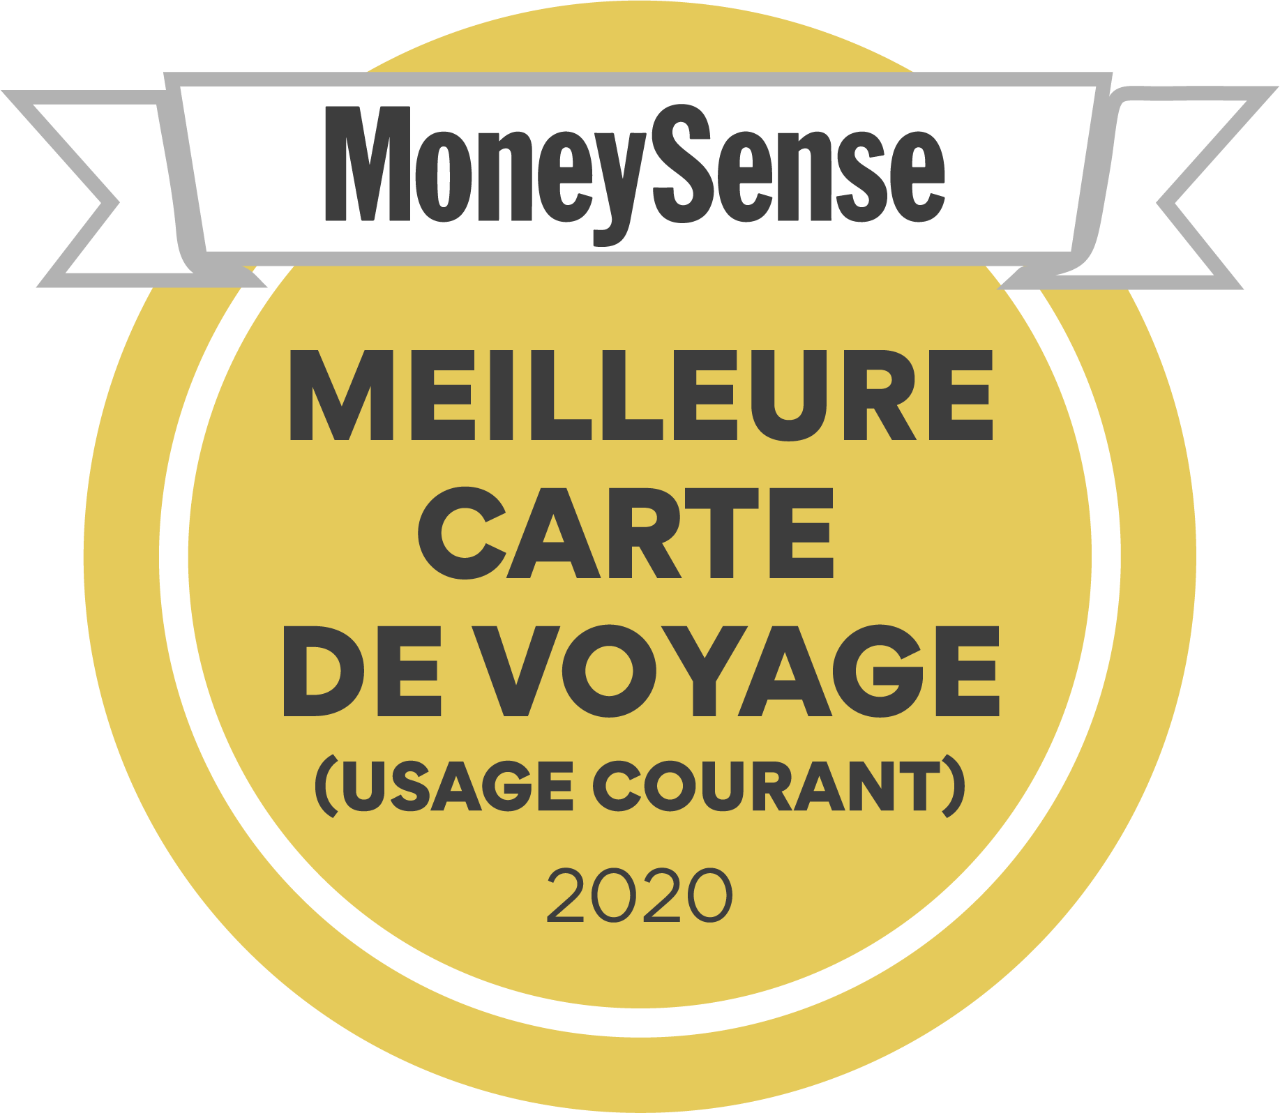  Insigne: Prix Meilleure Carte de Voyage (usage courant) 2020 par MoneySense